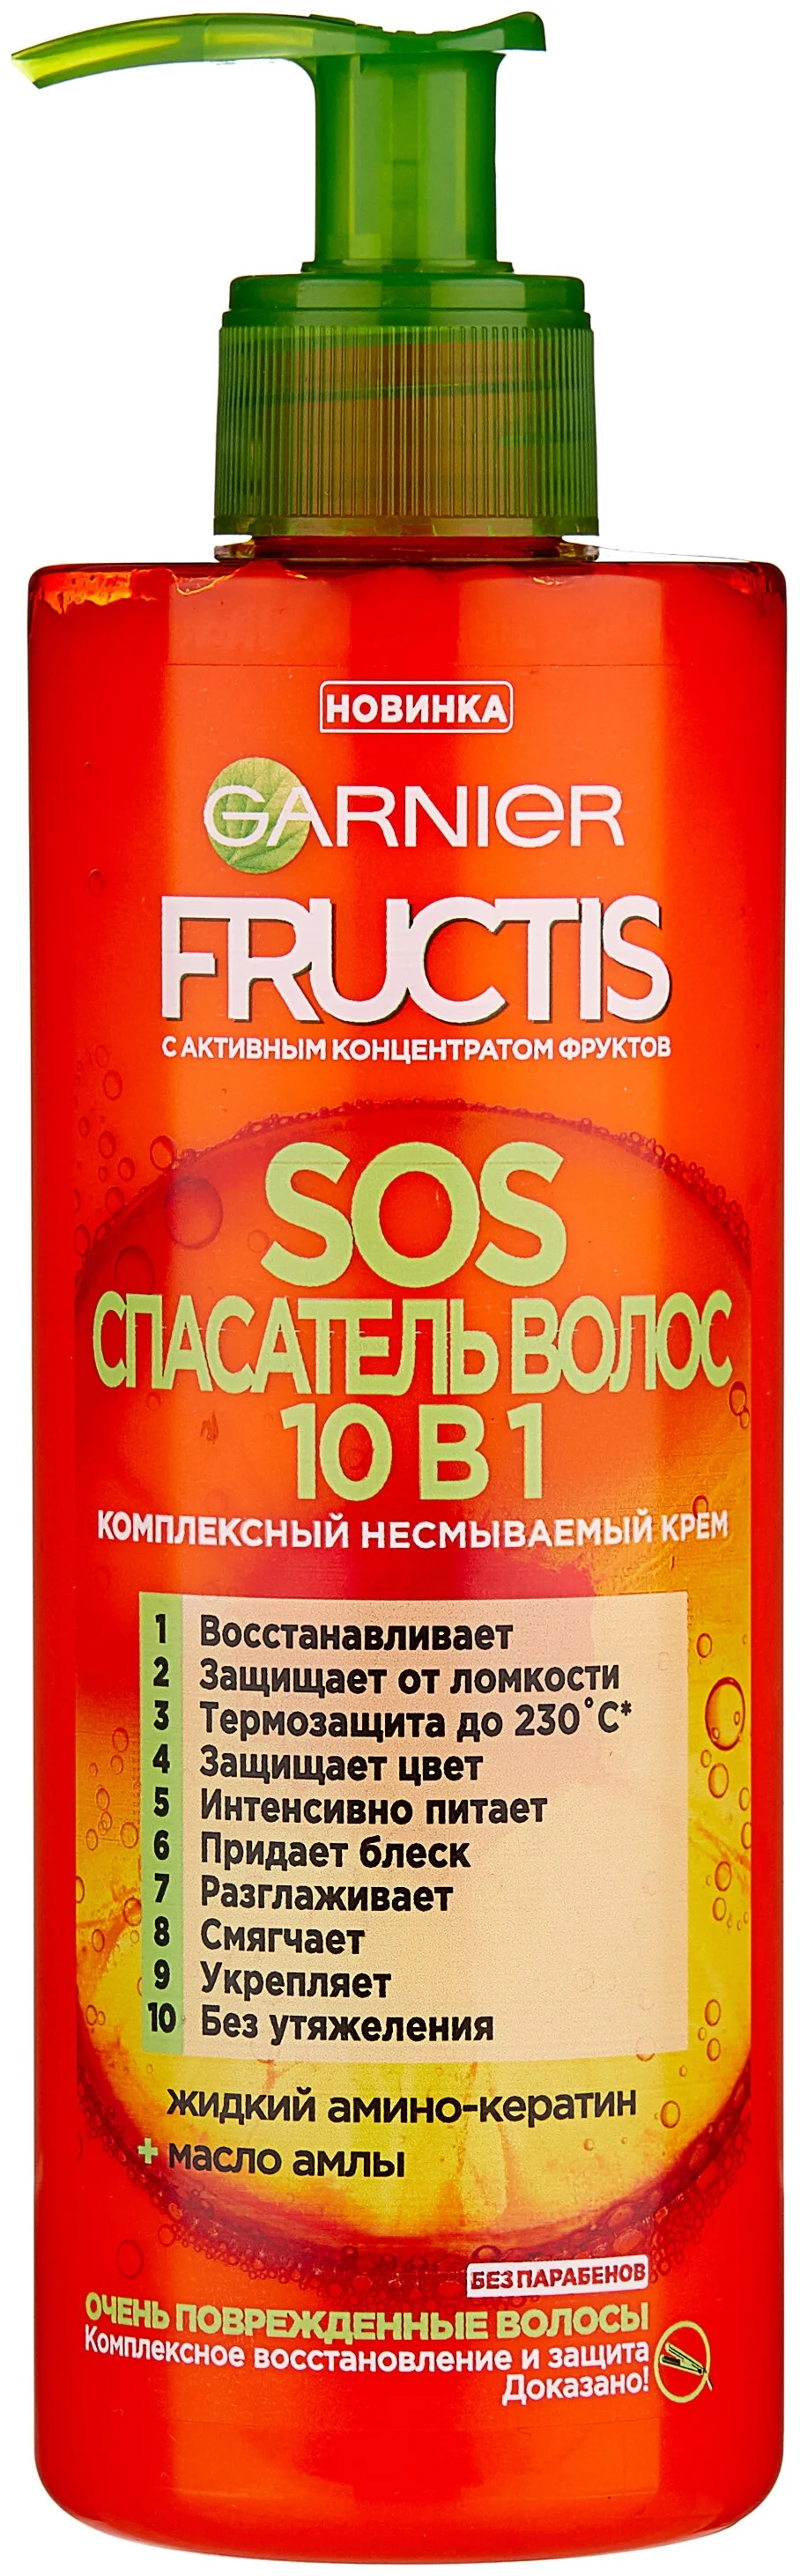 GARNIER Комплексный несмываемый уход Fructis SOS Спасатель волос 10 в 1 - тип волос: нормальные, для всех типов